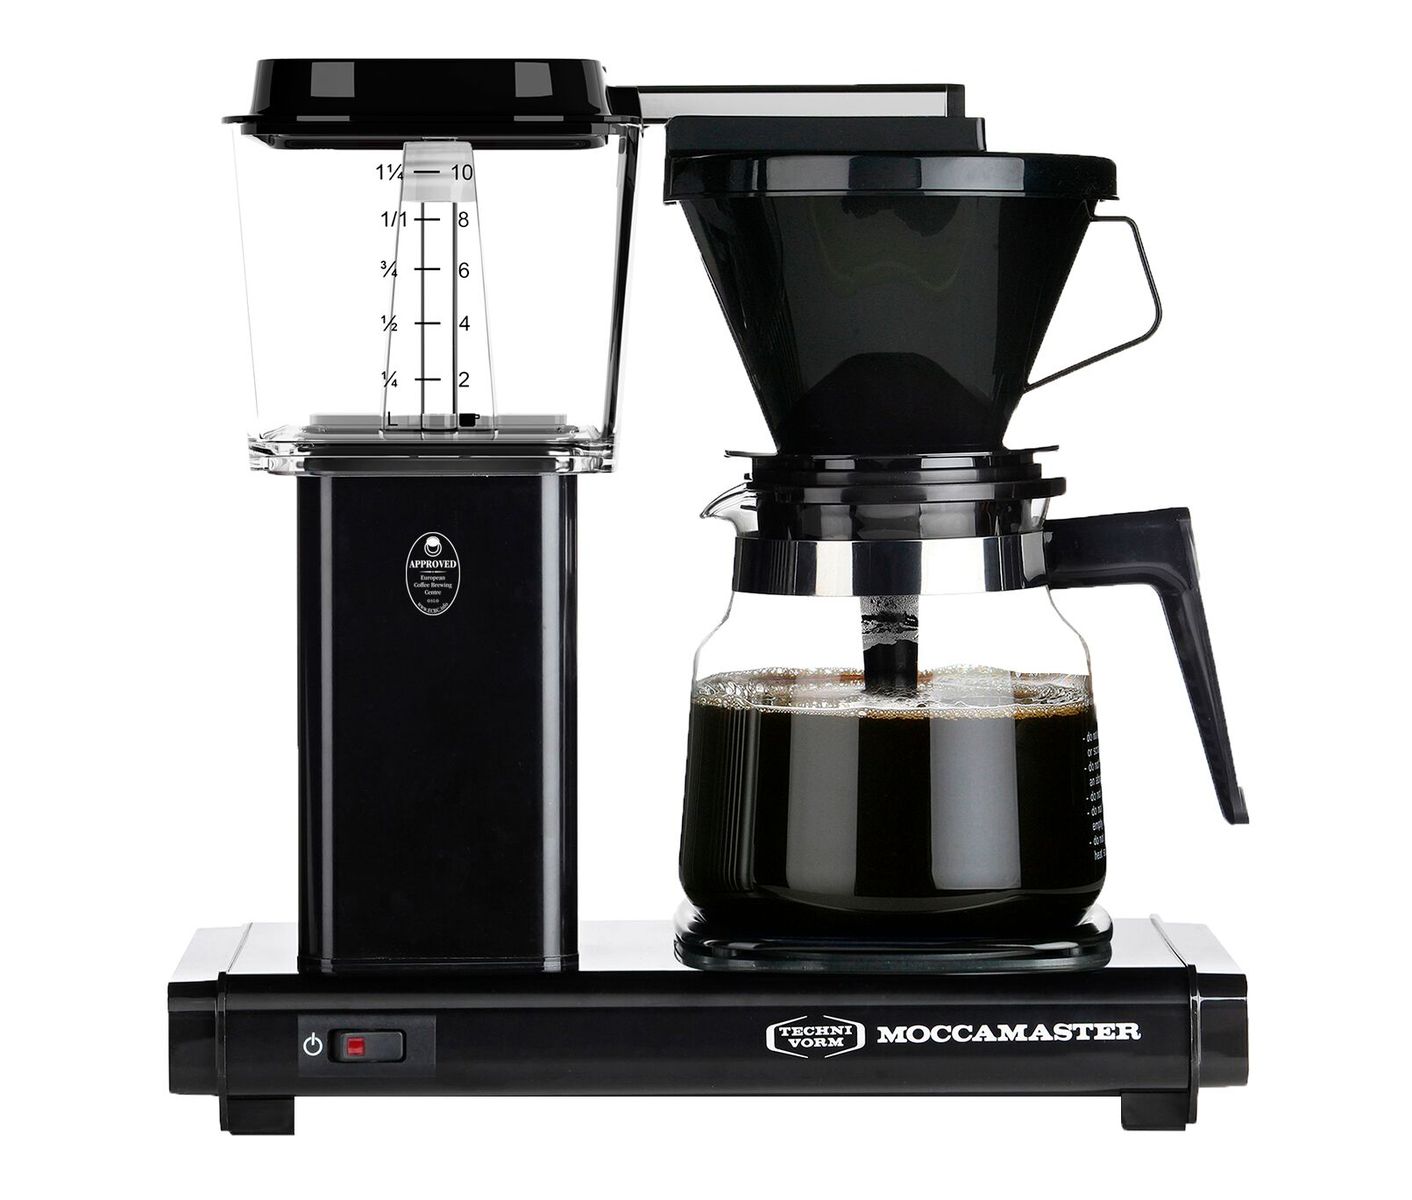 Compose Fremskreden industri Kaffemaskine fra moccamaster Test 2023 - De 5 bedste kåret i test